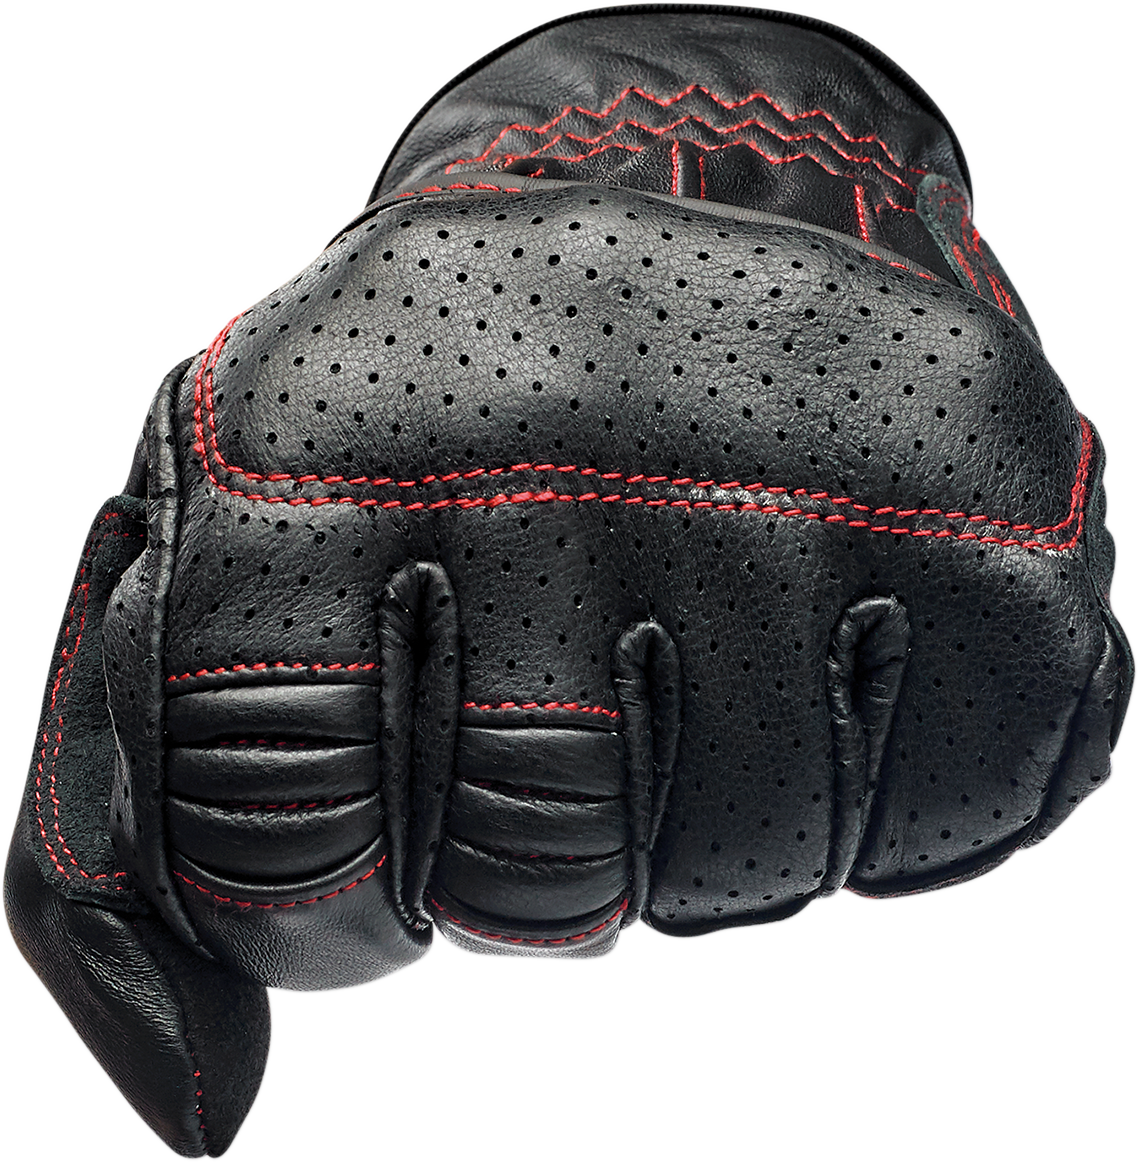 BILTWELL Borrego Gloves - Redline - Large 1506-0108-304